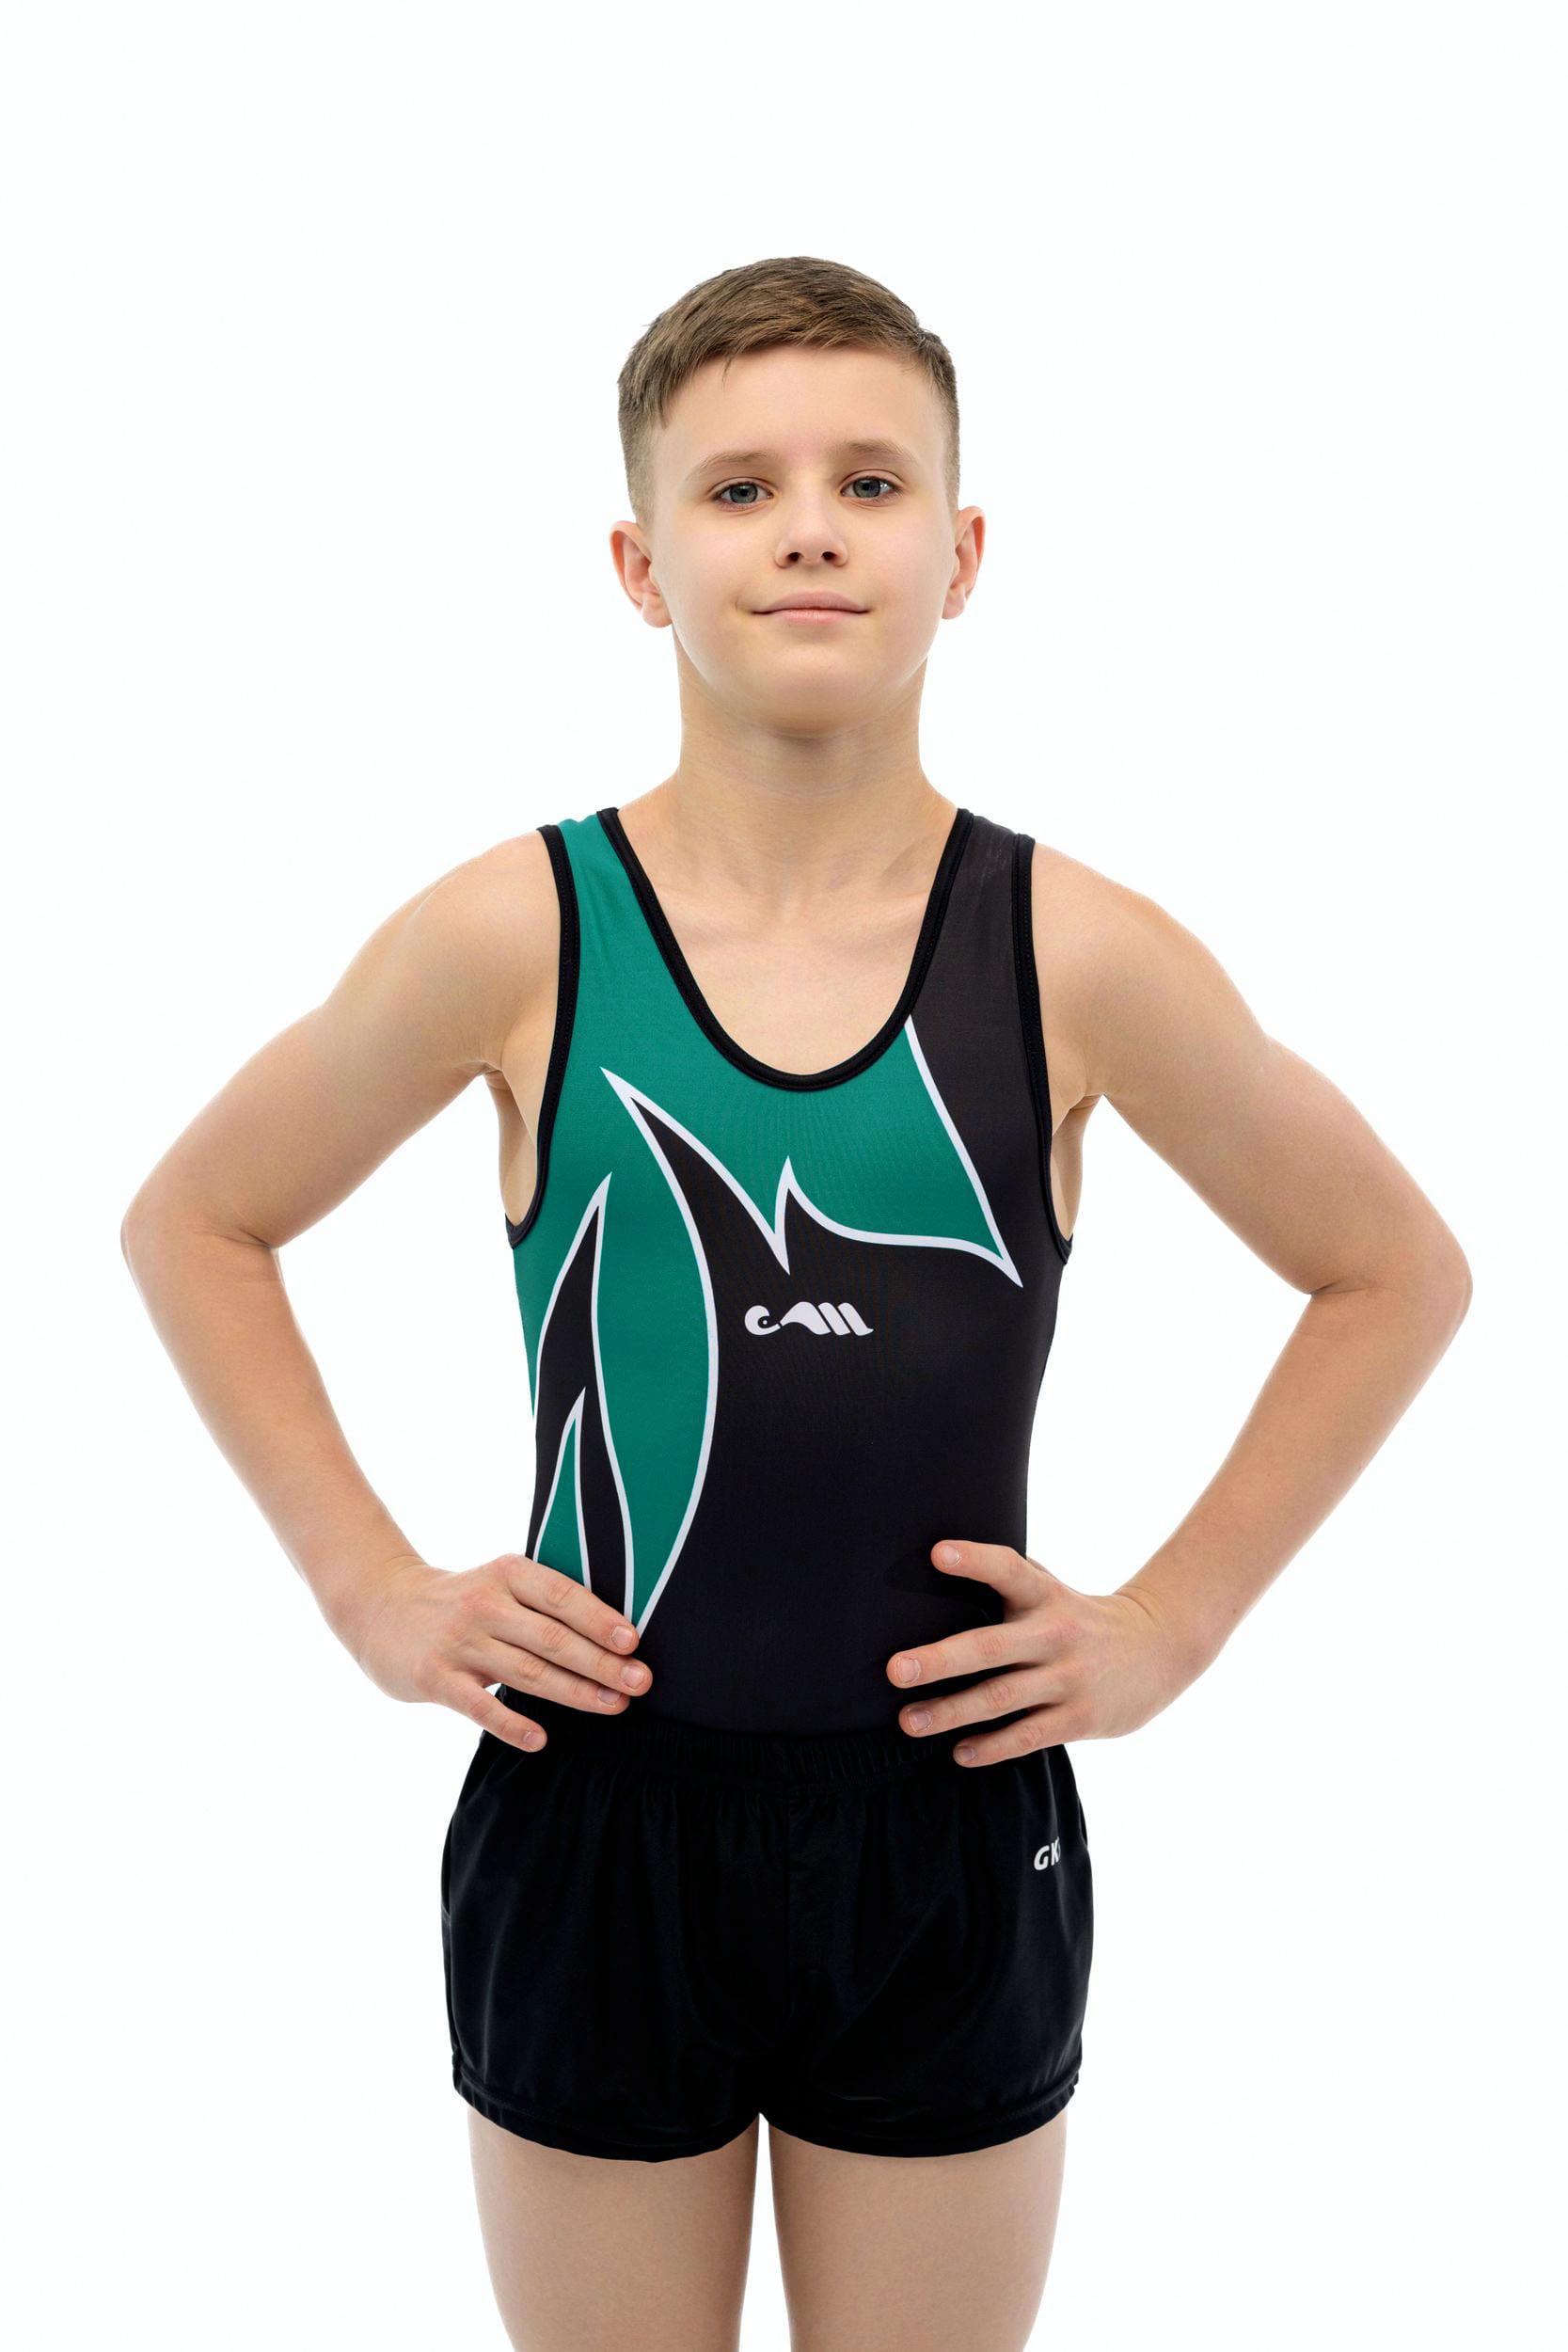 Купальник мужской для спортивной гимнастики Christian Moreau 4951 черный с зеленым рисунком без рукава